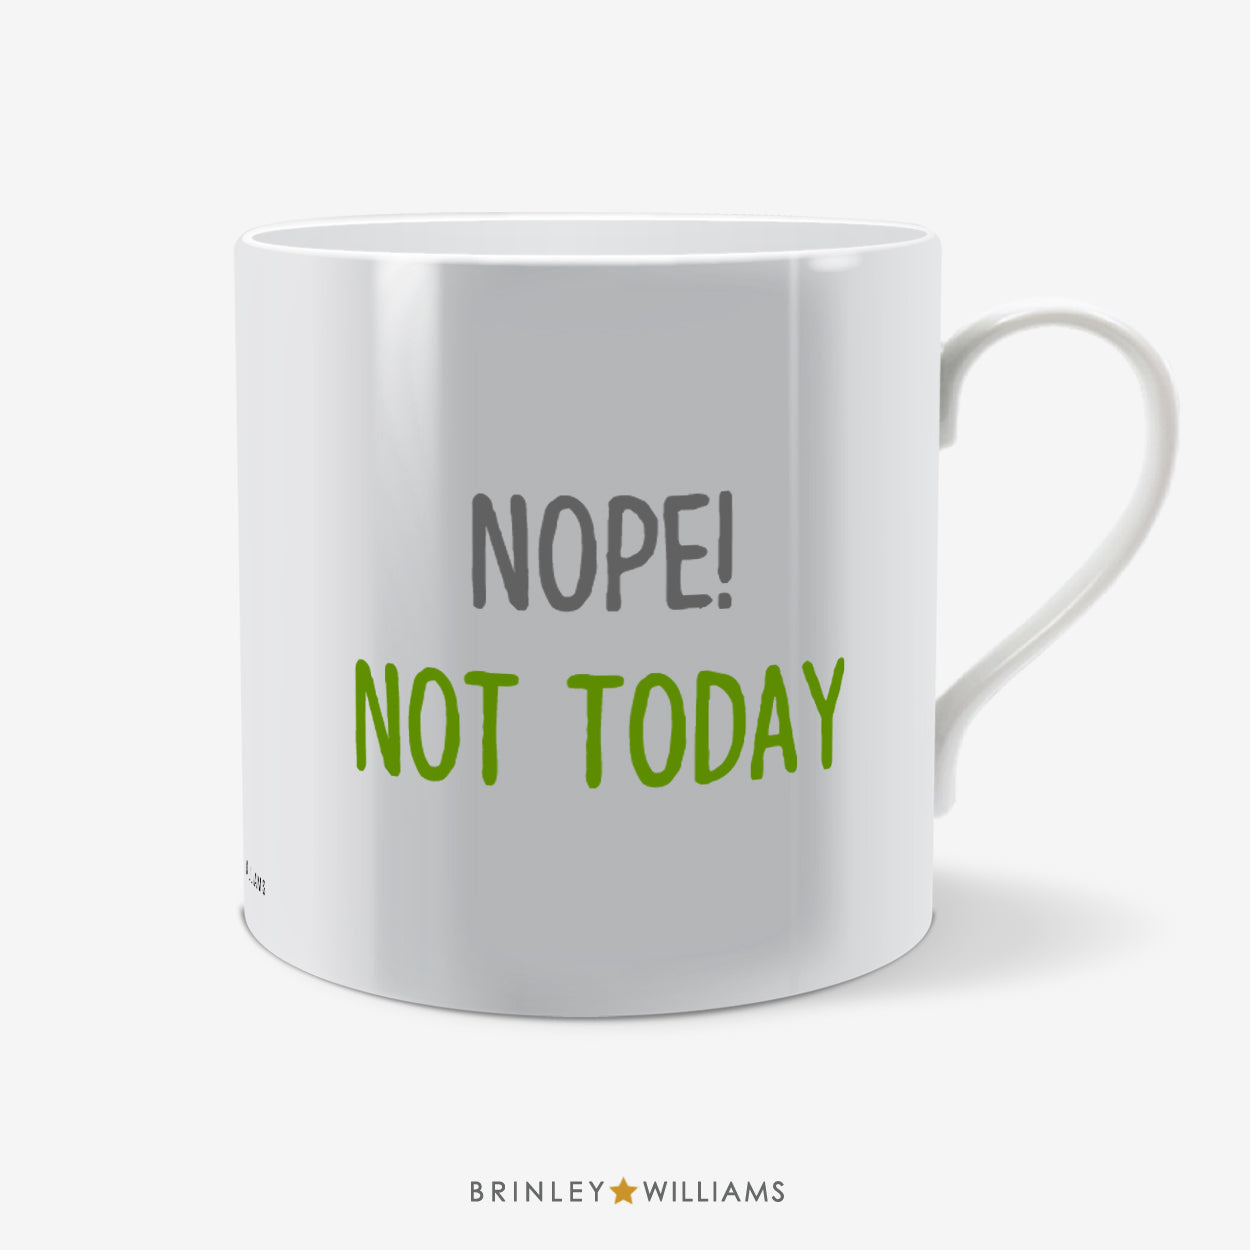 Nope! Not Today Fun Mug - Green